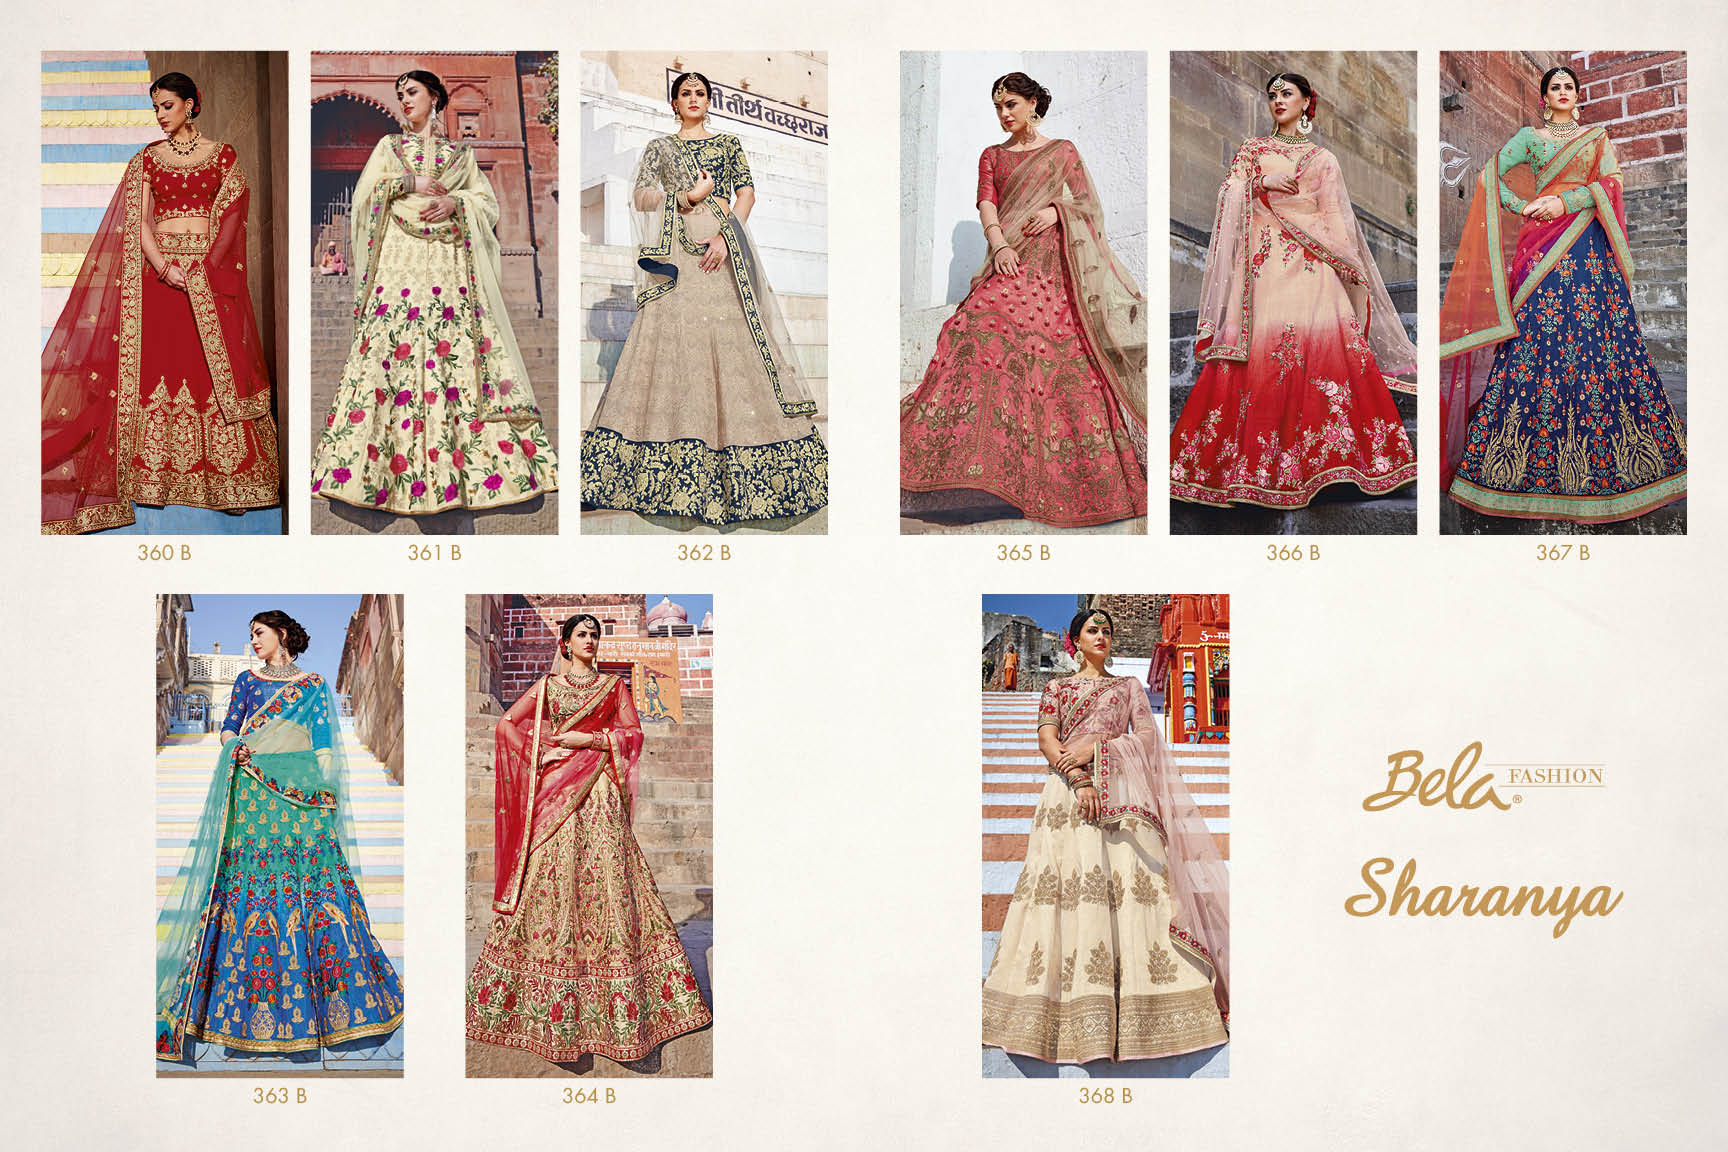 Bela Fashion's Sharanya Bridal Lehenga